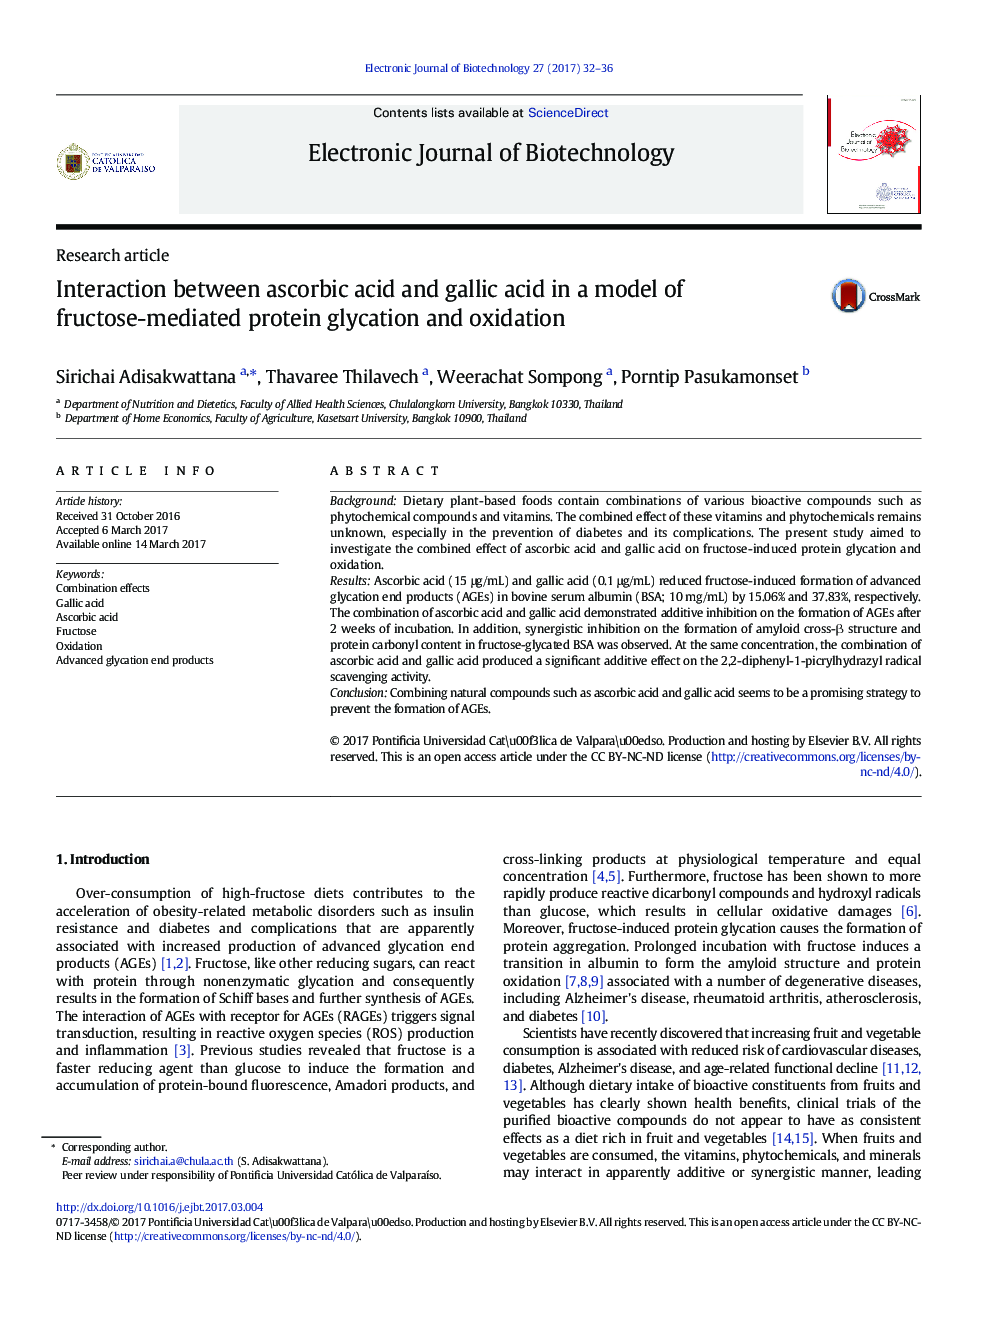 تعامل اسید اسکوربیک و اسید گالیک در یک مدل از پروتئین گلیکاسیون و اکسیداسیون پروتئینی متشکل از فروکتوز 